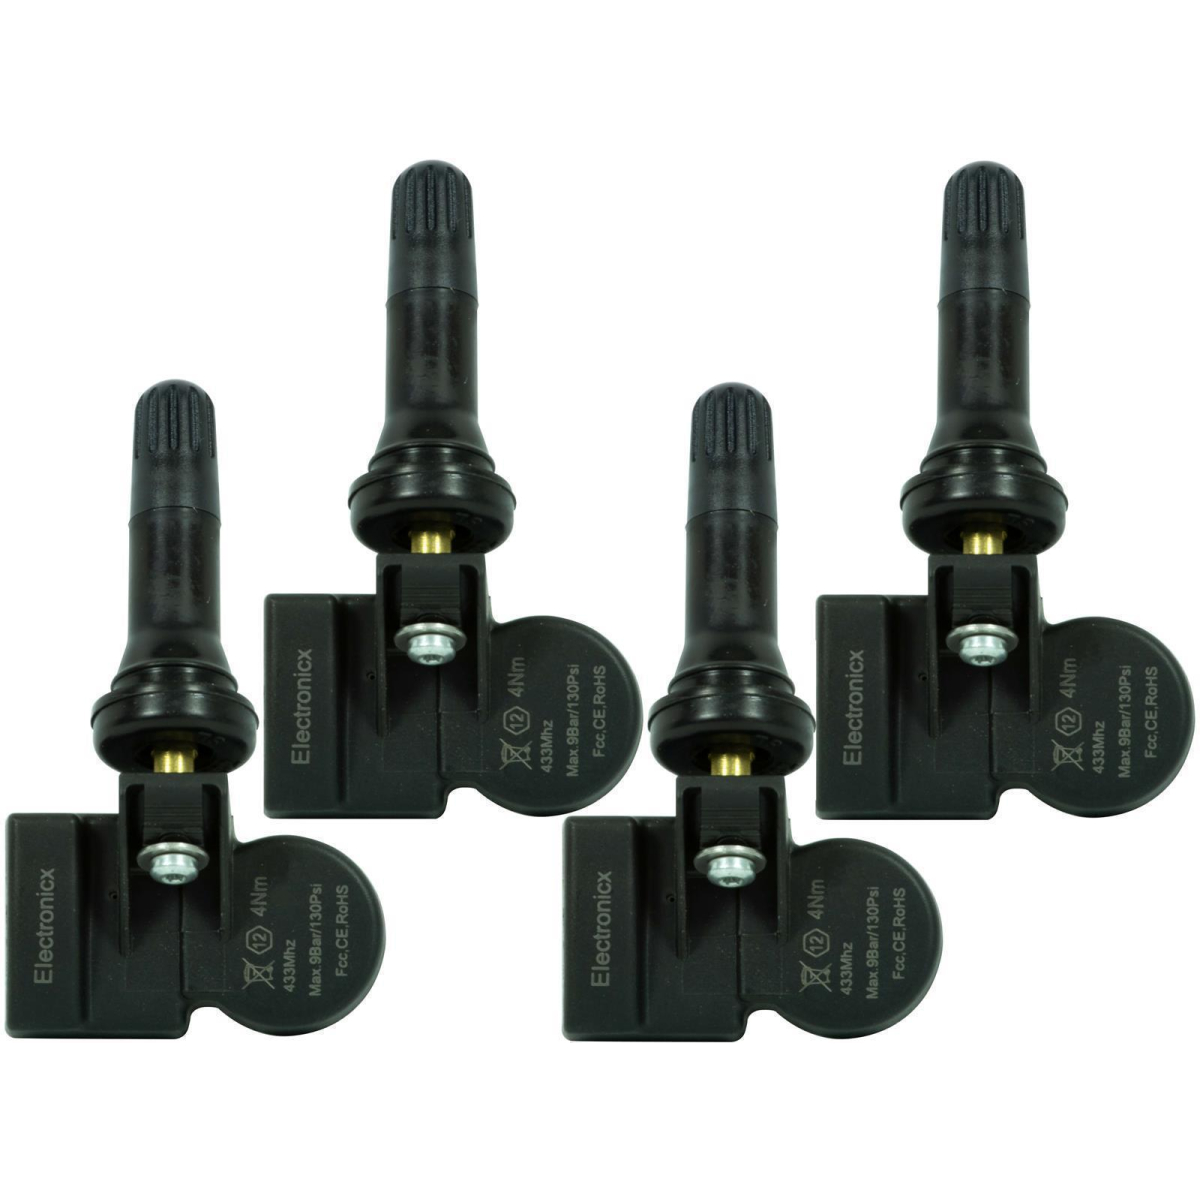 4 tire pressure sensors rdks sensors rubber valve for Infiniti G37 01.2007-02.2010